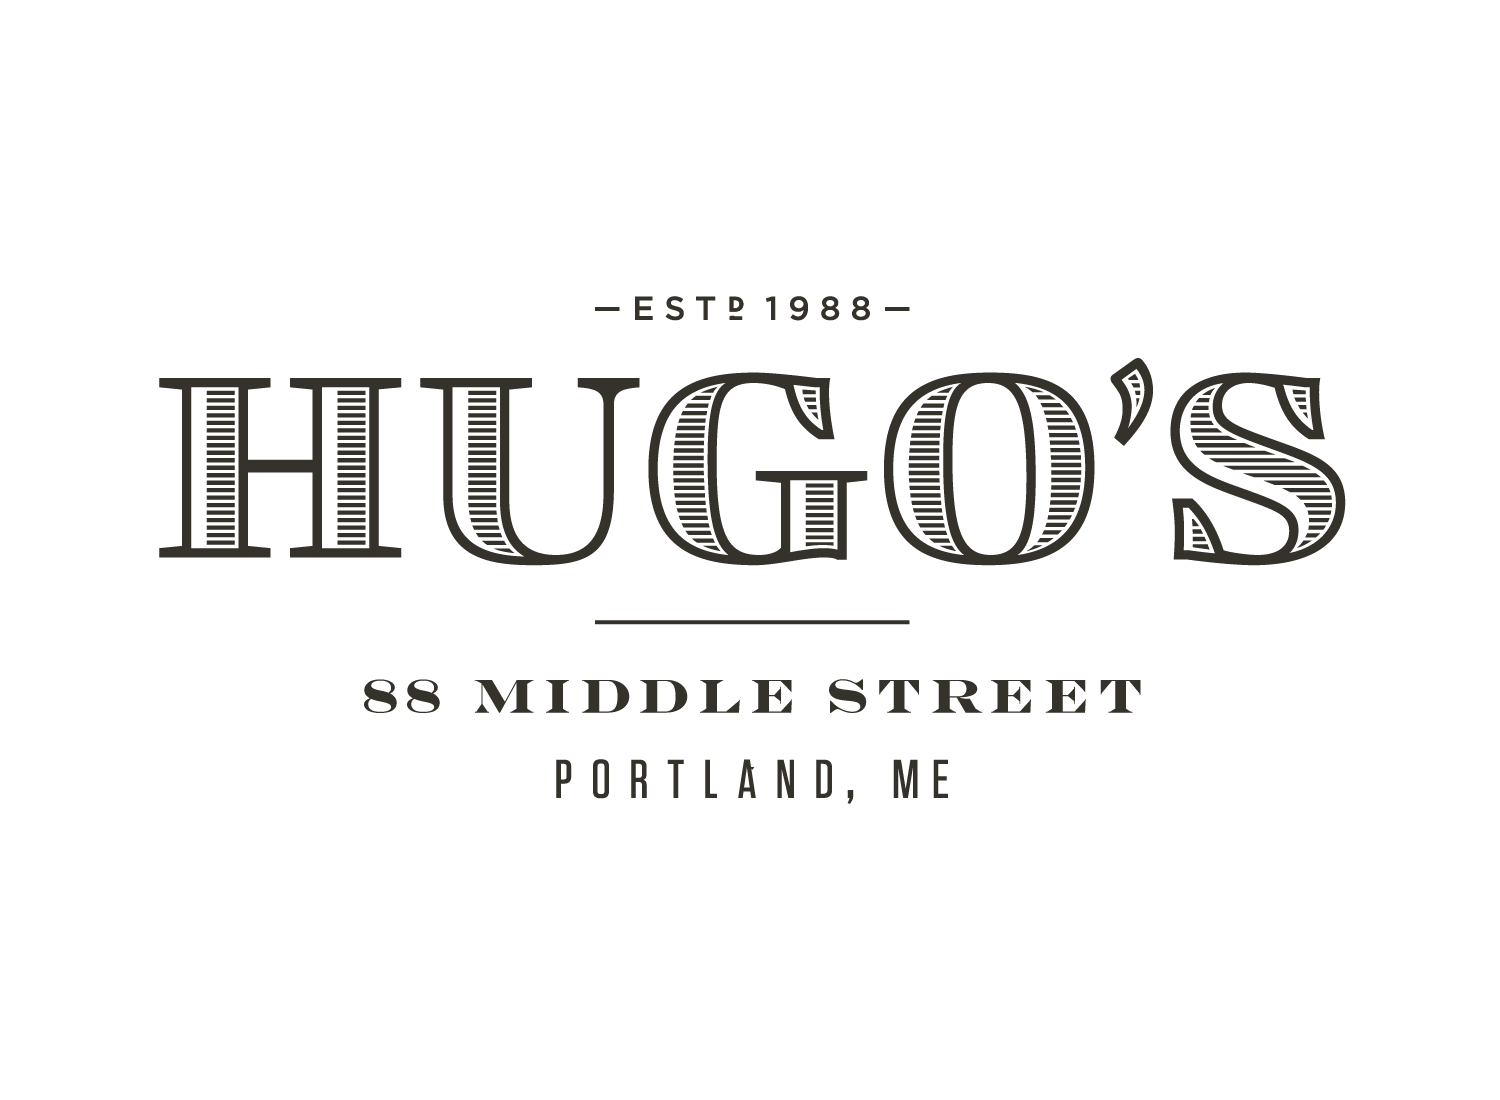 Hugo's Logotype in Lockup